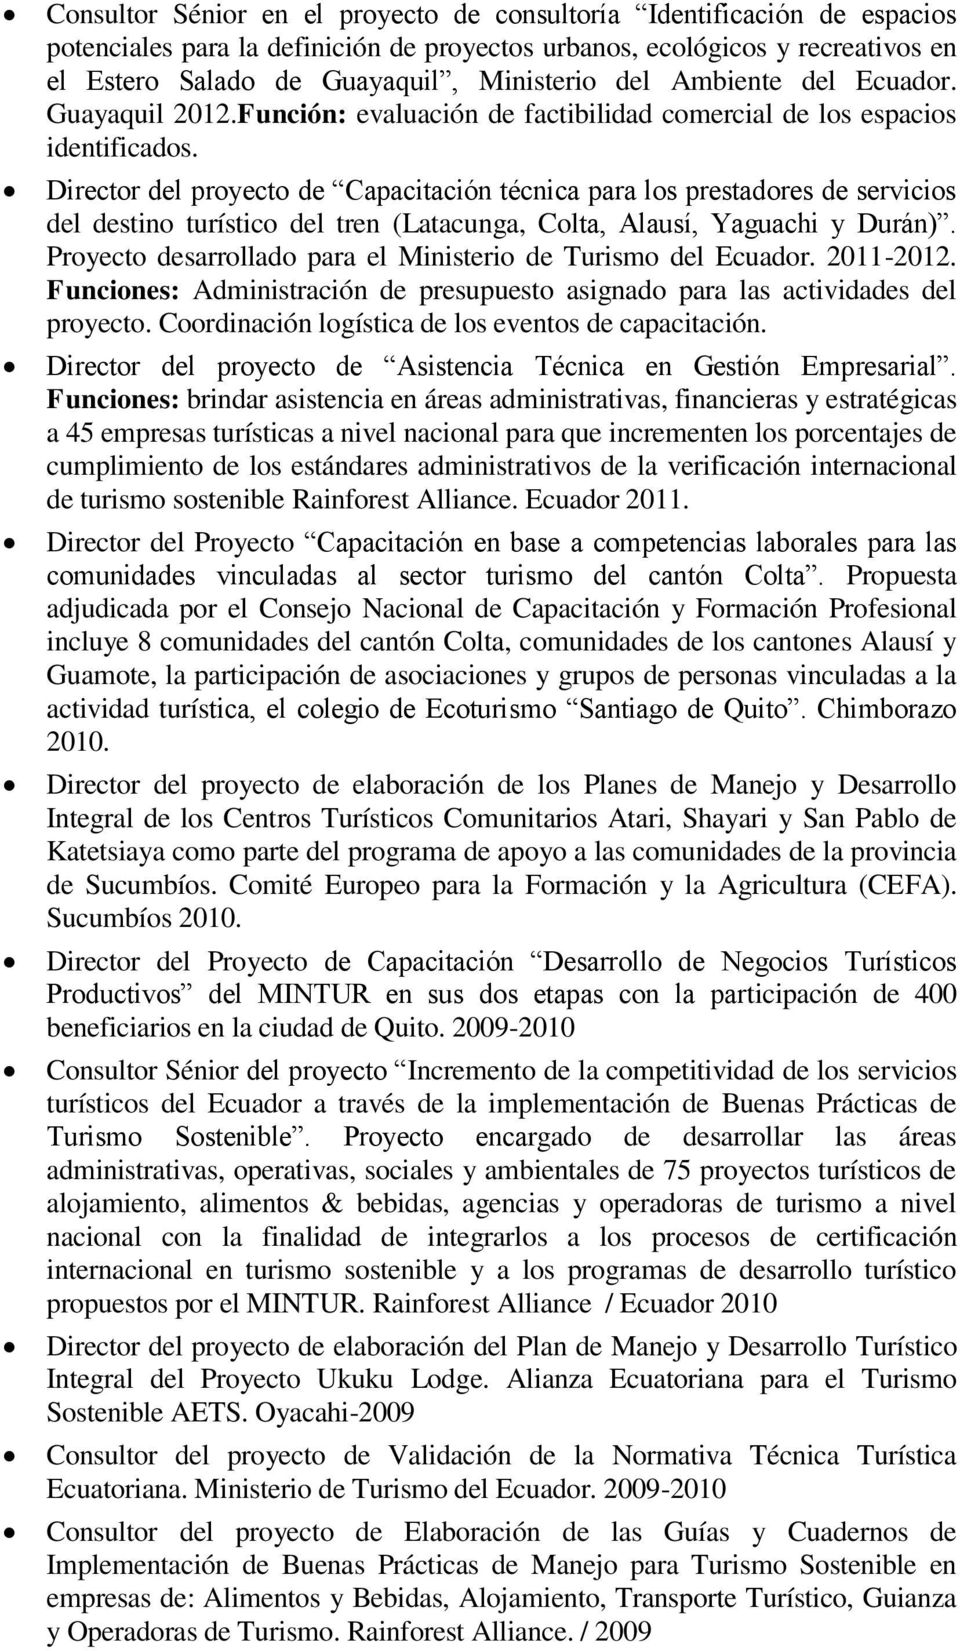 Director del proyecto de Capacitación técnica para los prestadores de servicios del destino turístico del tren (Latacunga, Colta, Alausí, Yaguachi y Durán).